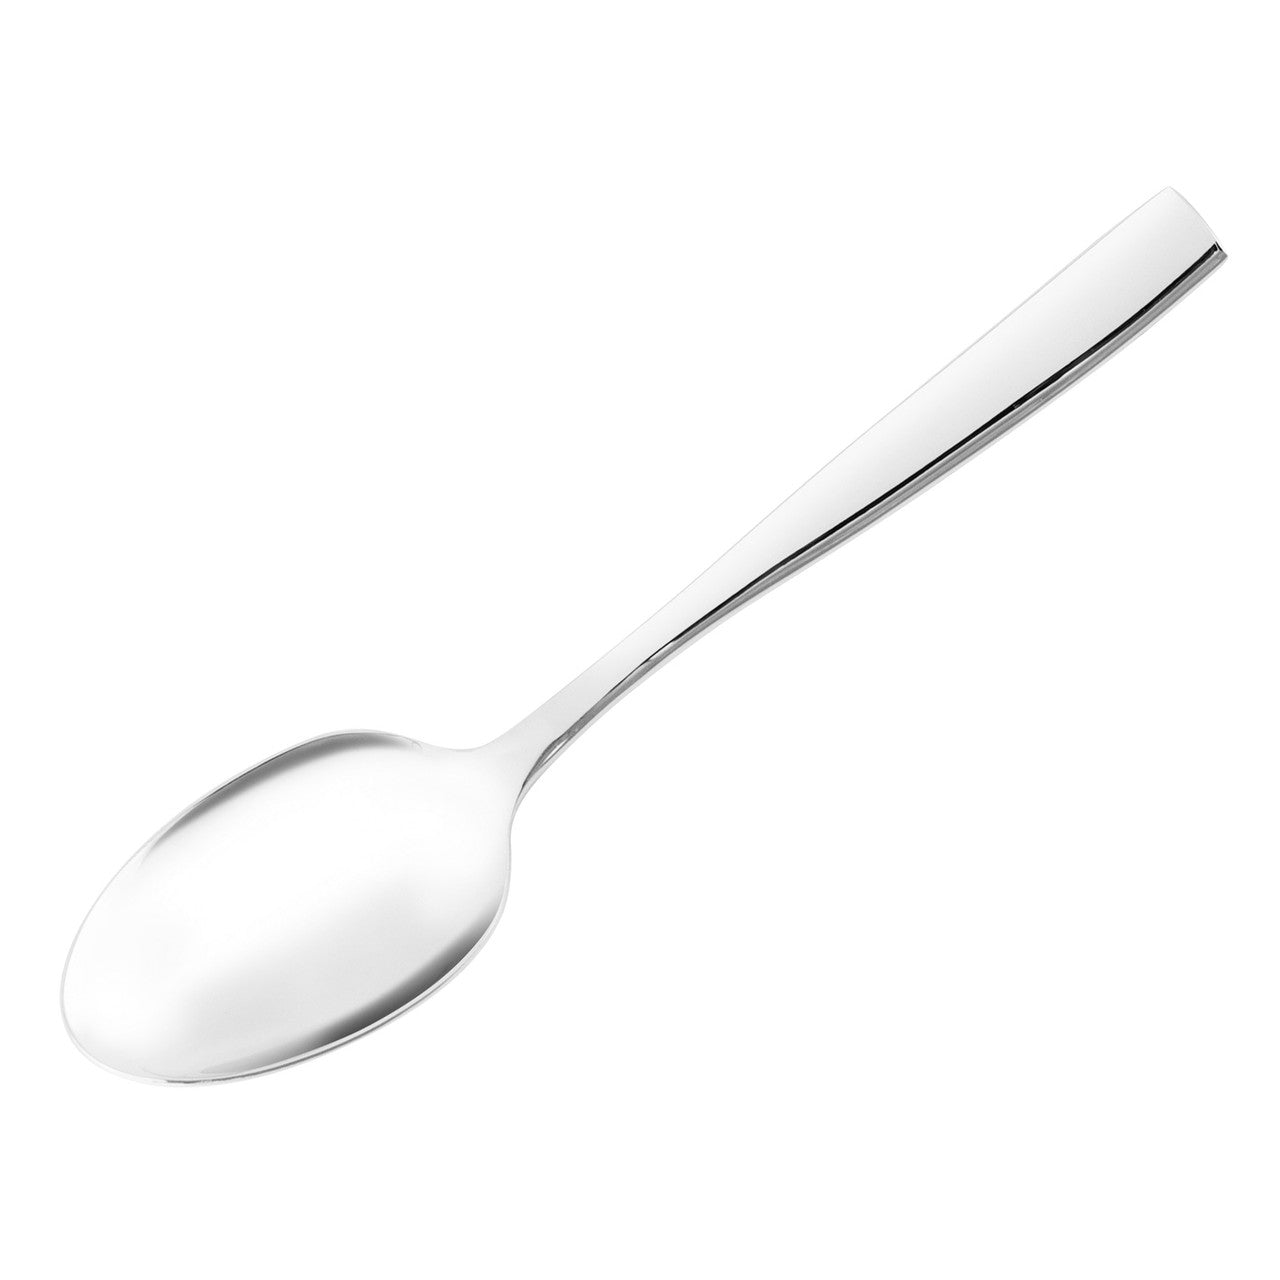 Hartford Tea Spoon 14.1cm
Measurement: 21.0cm

Key Features: